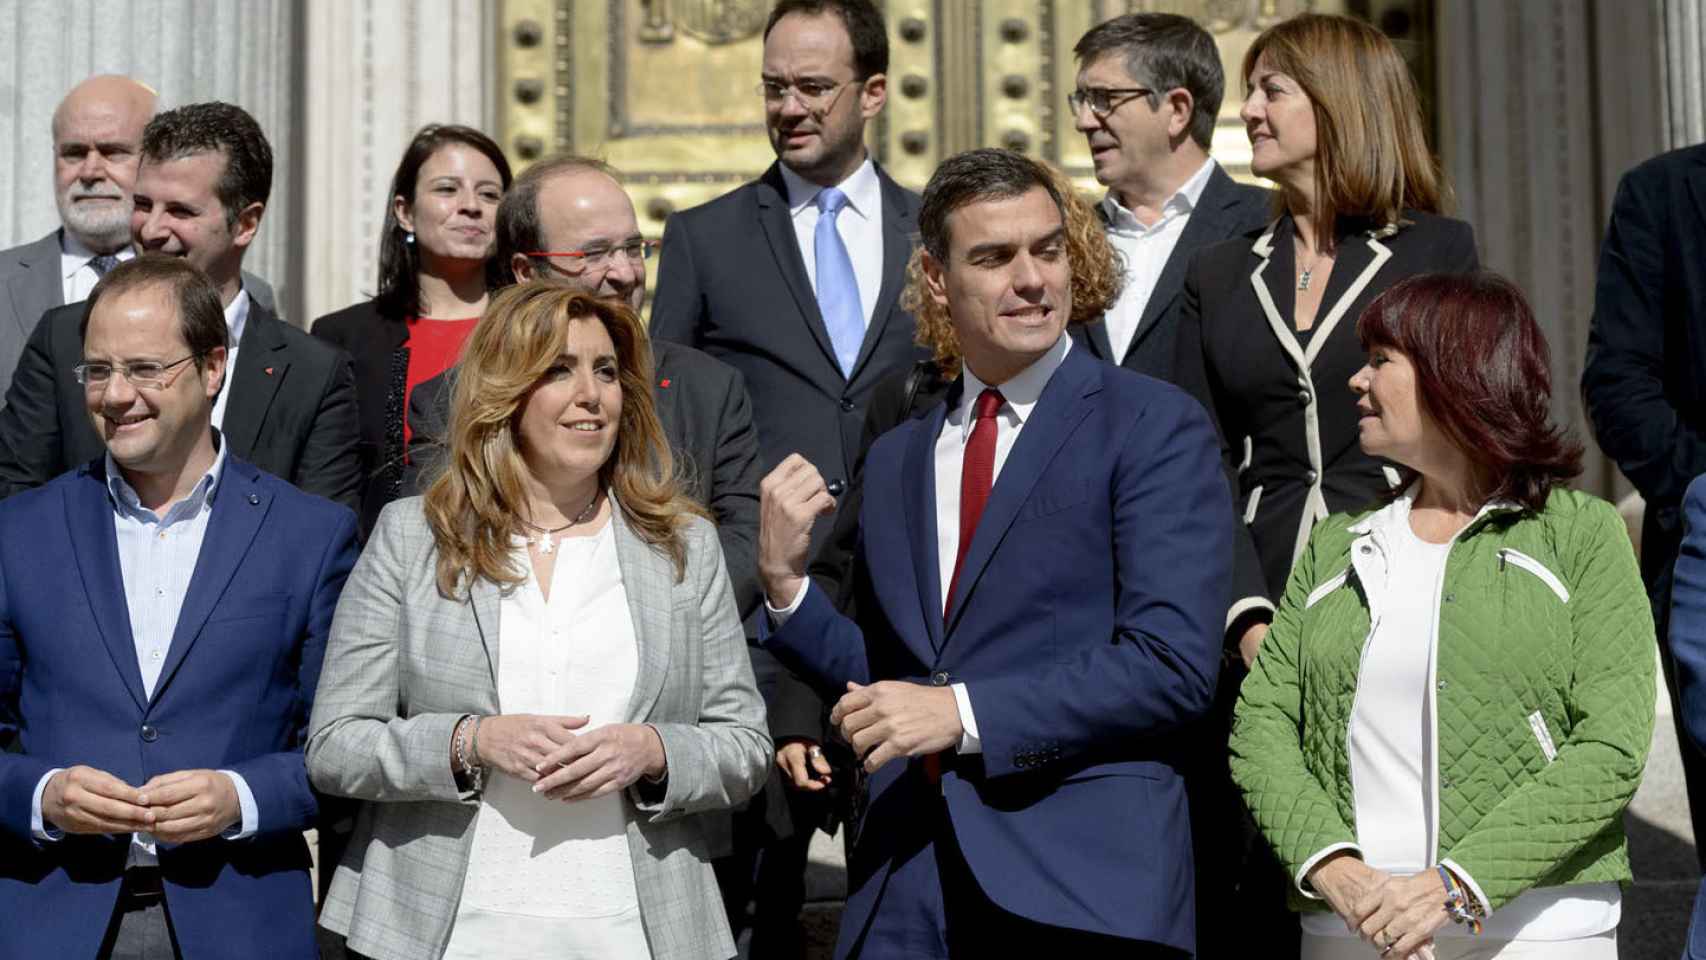 Susana Díaz y Pedro Sánchez, en las escaleras del Congreso antes de la campaña electoral